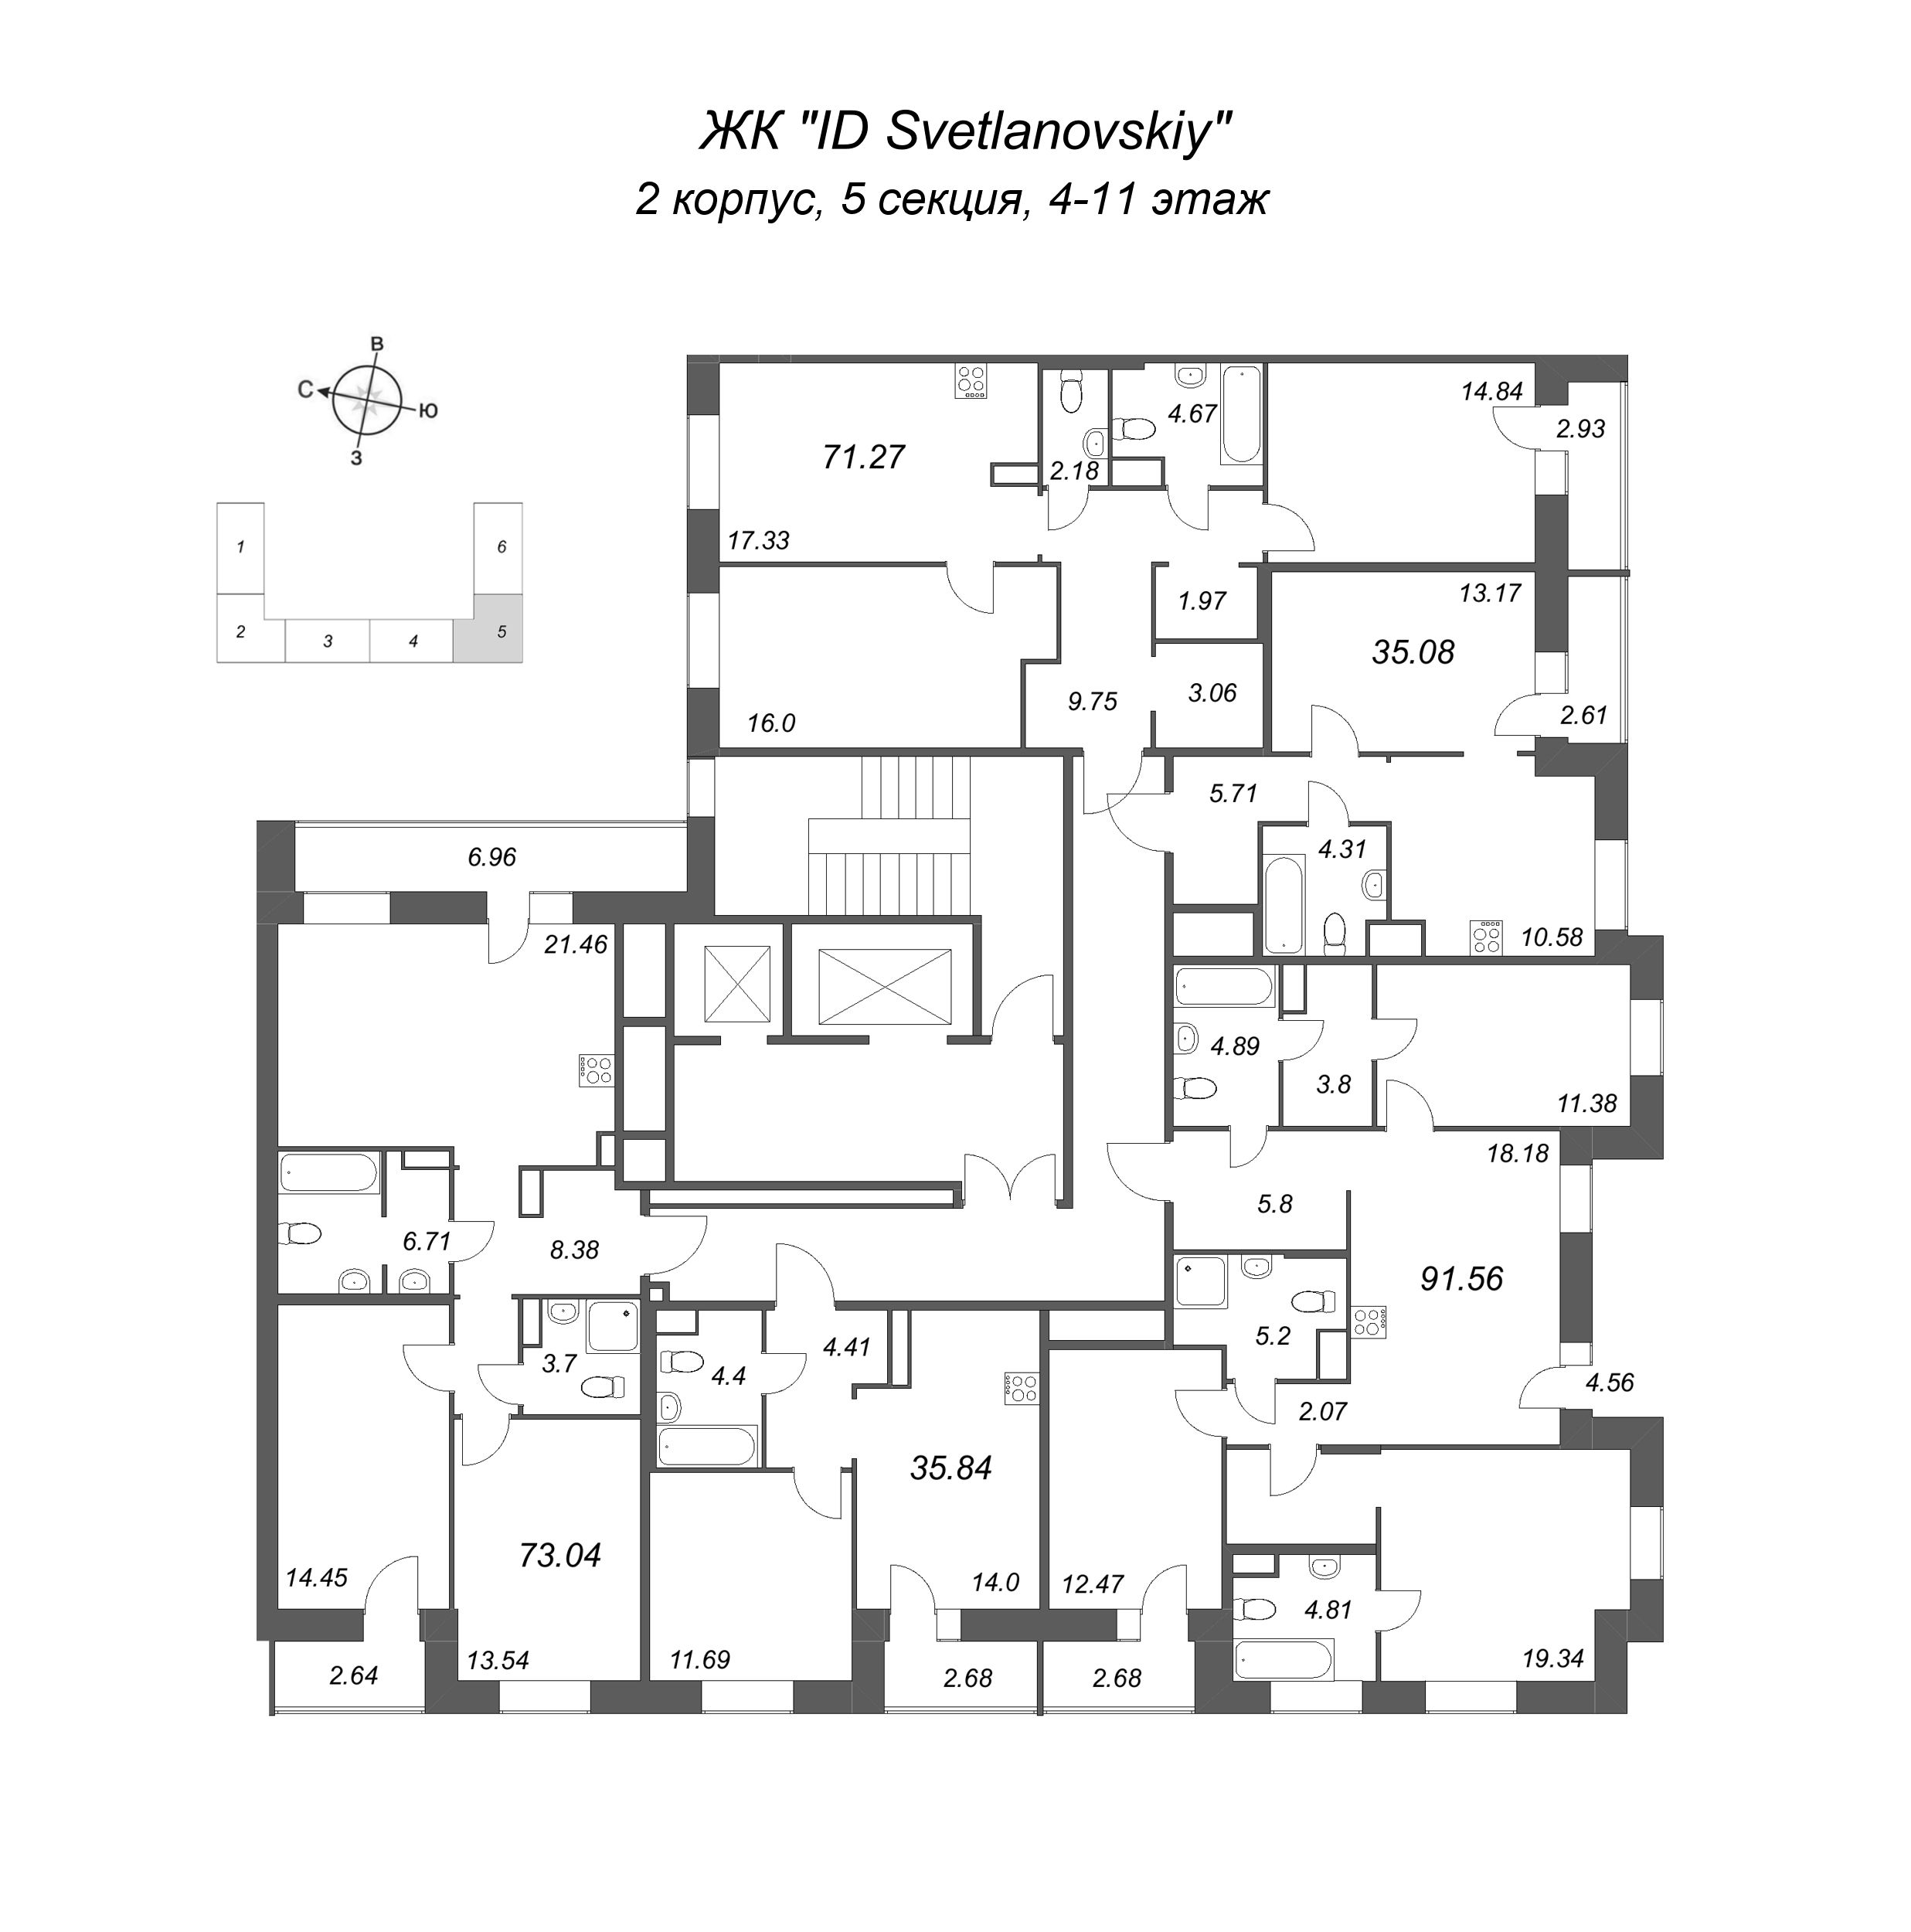 1-комнатная квартира, 35.08 м² в ЖК "ID Svetlanovskiy" - планировка этажа